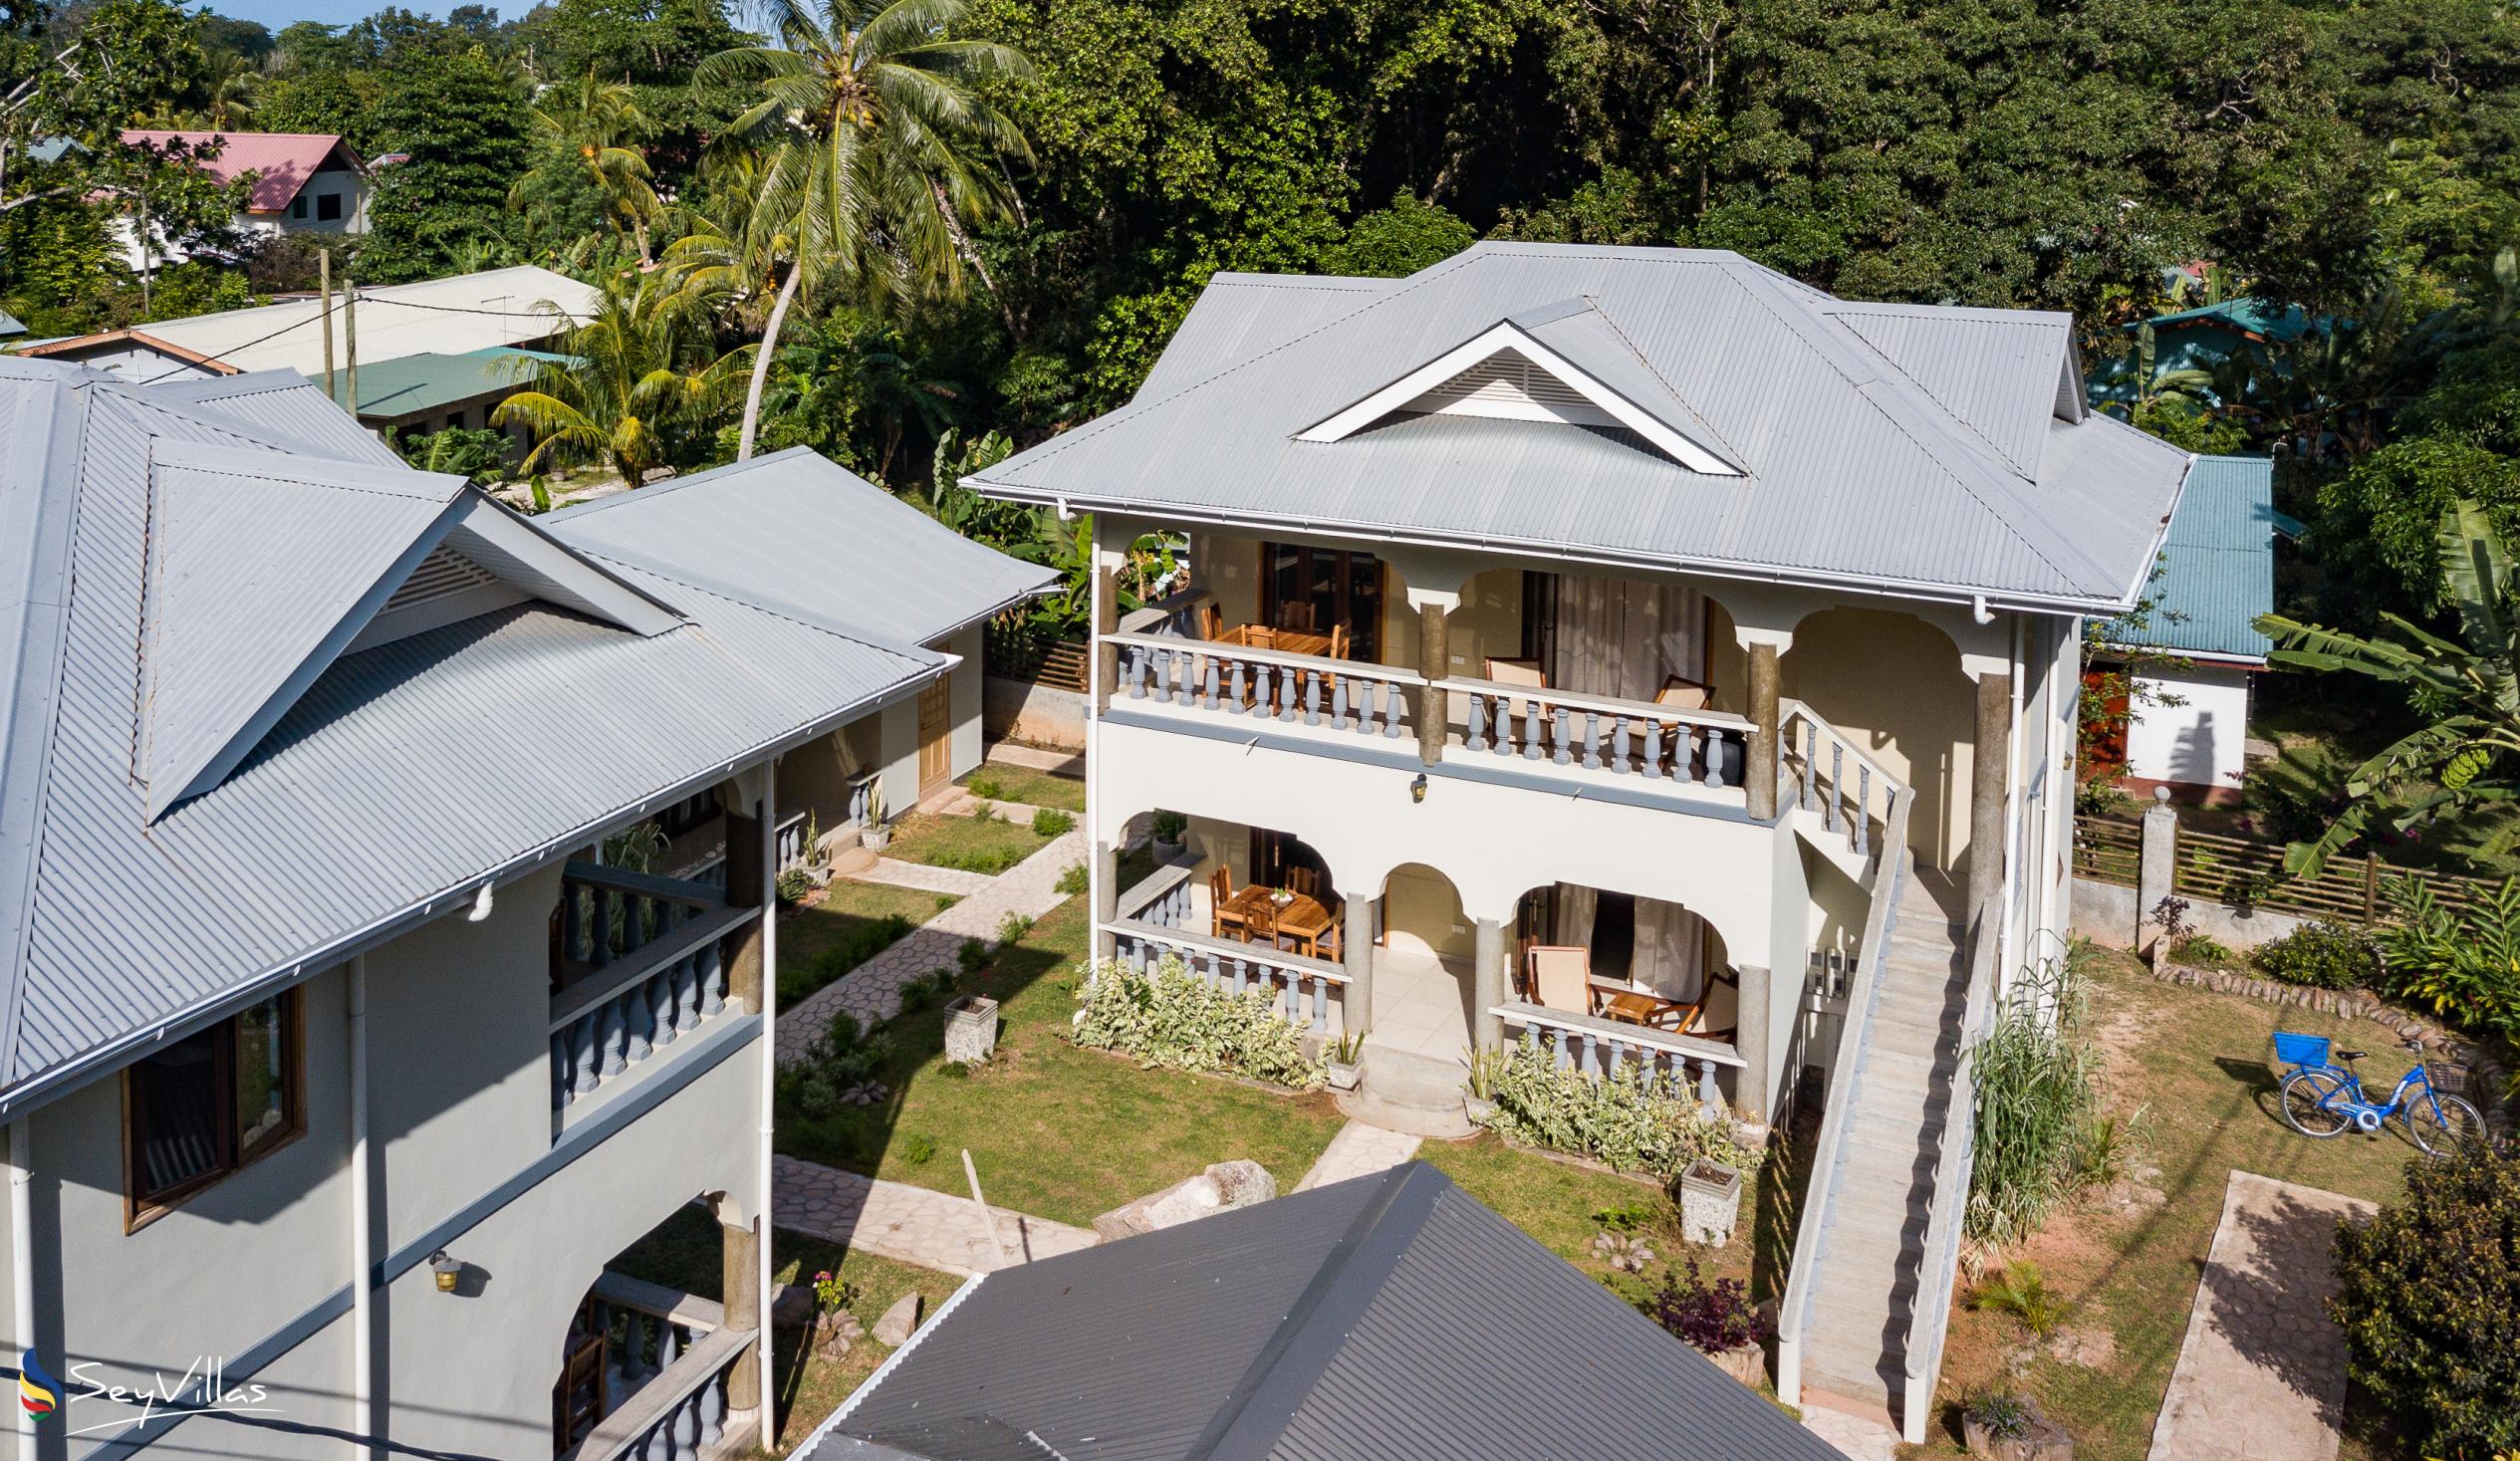 Foto 7: Maison Ed-Elle - Extérieur - La Digue (Seychelles)